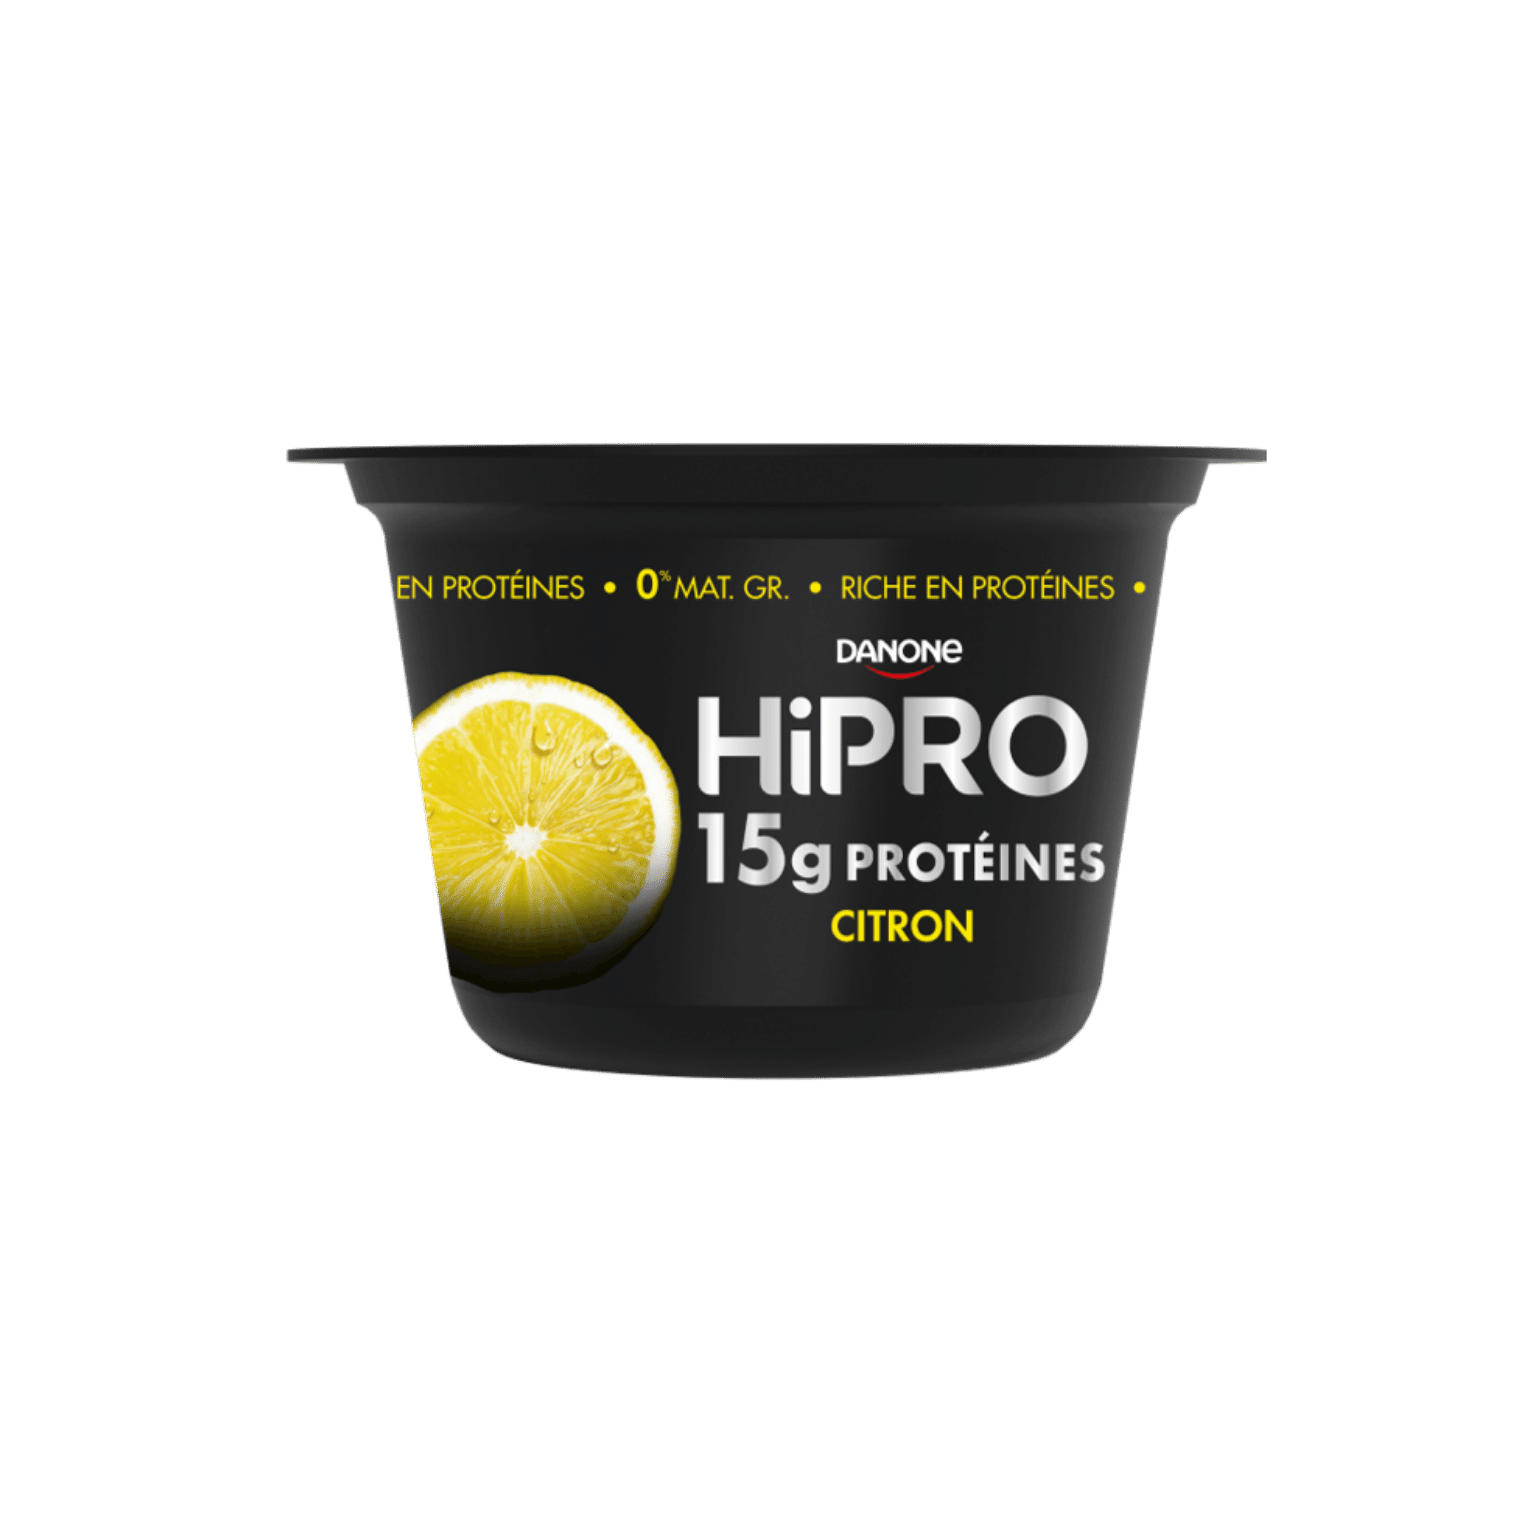 Découvrez notre onctueux HiPRO Citron à déguster à la cuillère, avec 15g de protéines et sans matières grasses.